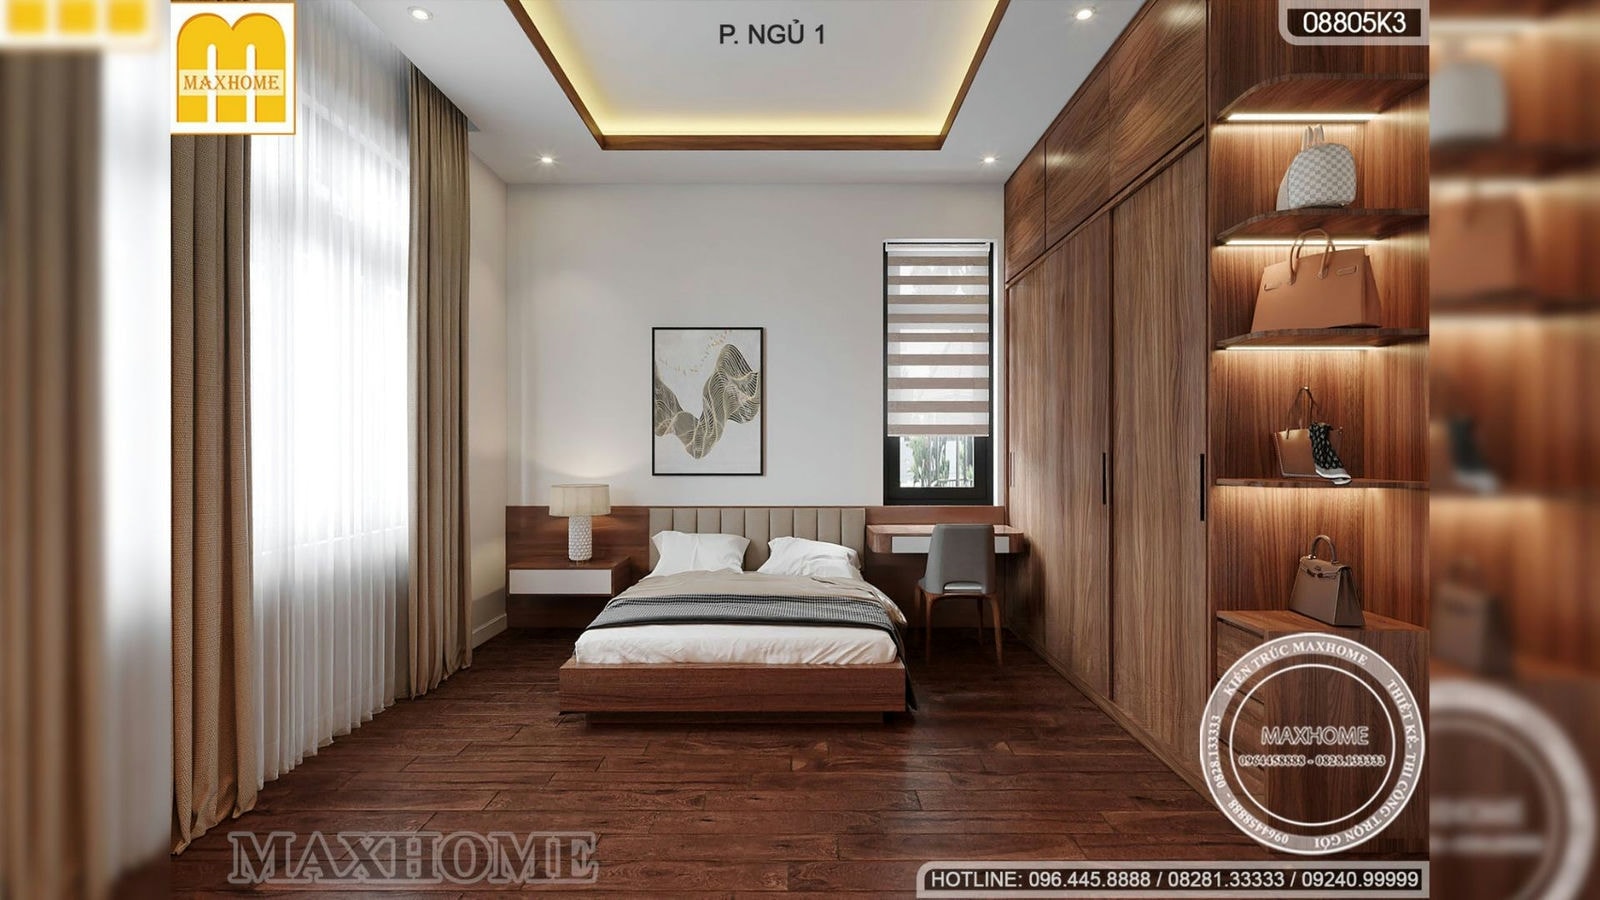 Thiết kế nội thất biệt thự hiện đại 2 tầng 1 tum SANG TRỌNG ấn tượng | MH02299